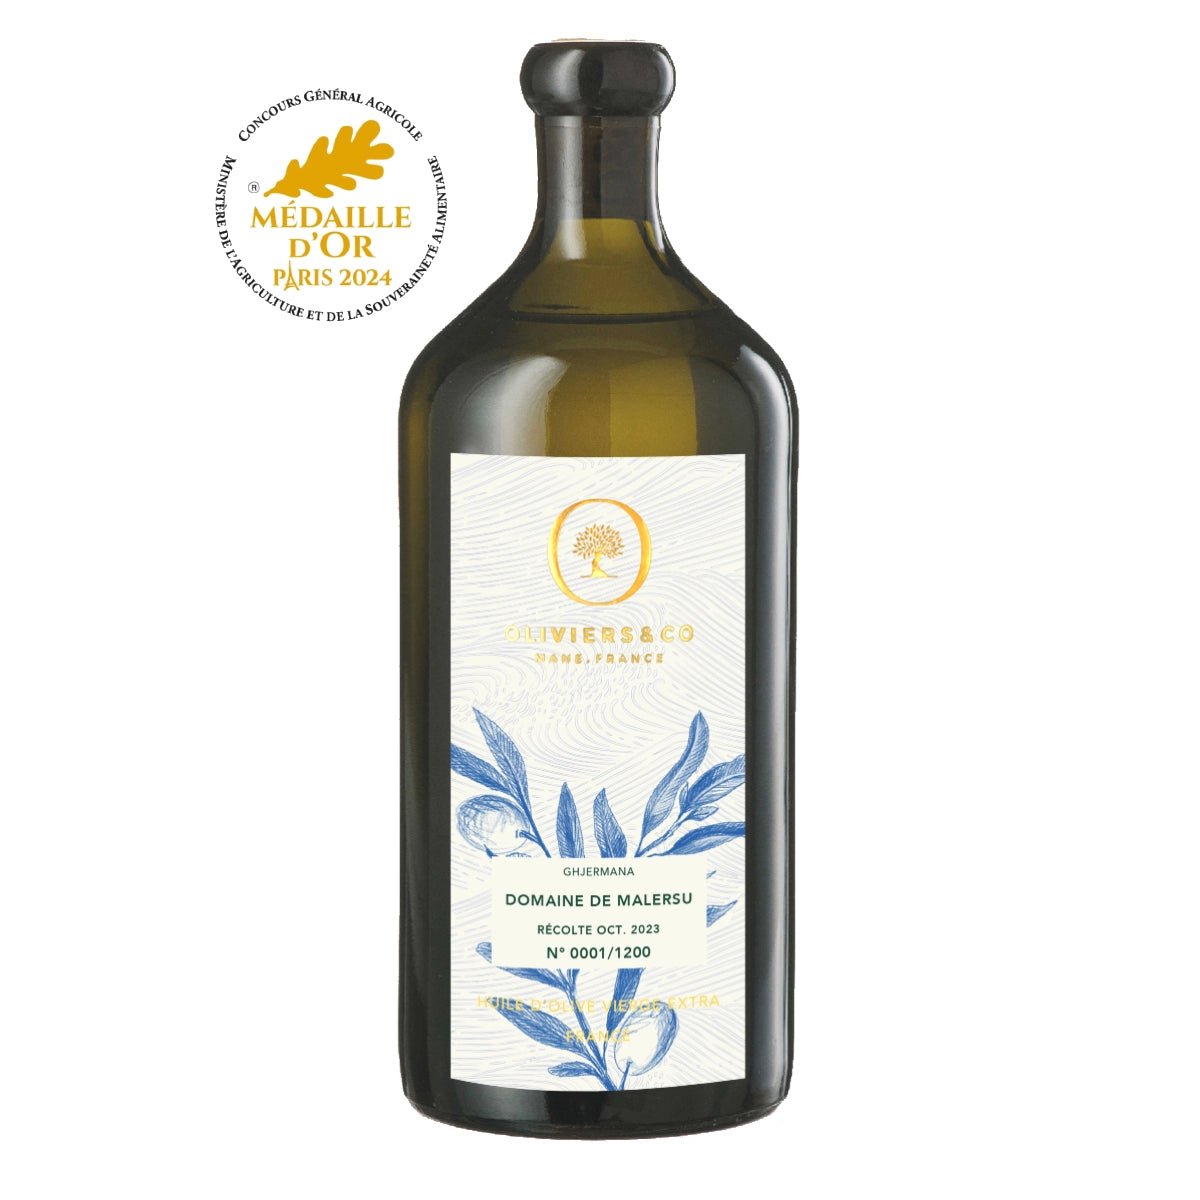 Domaine de Malersu guldvinder concours general agricole 500ml ekstra jomfru olivenolie fra Oliviers & Co